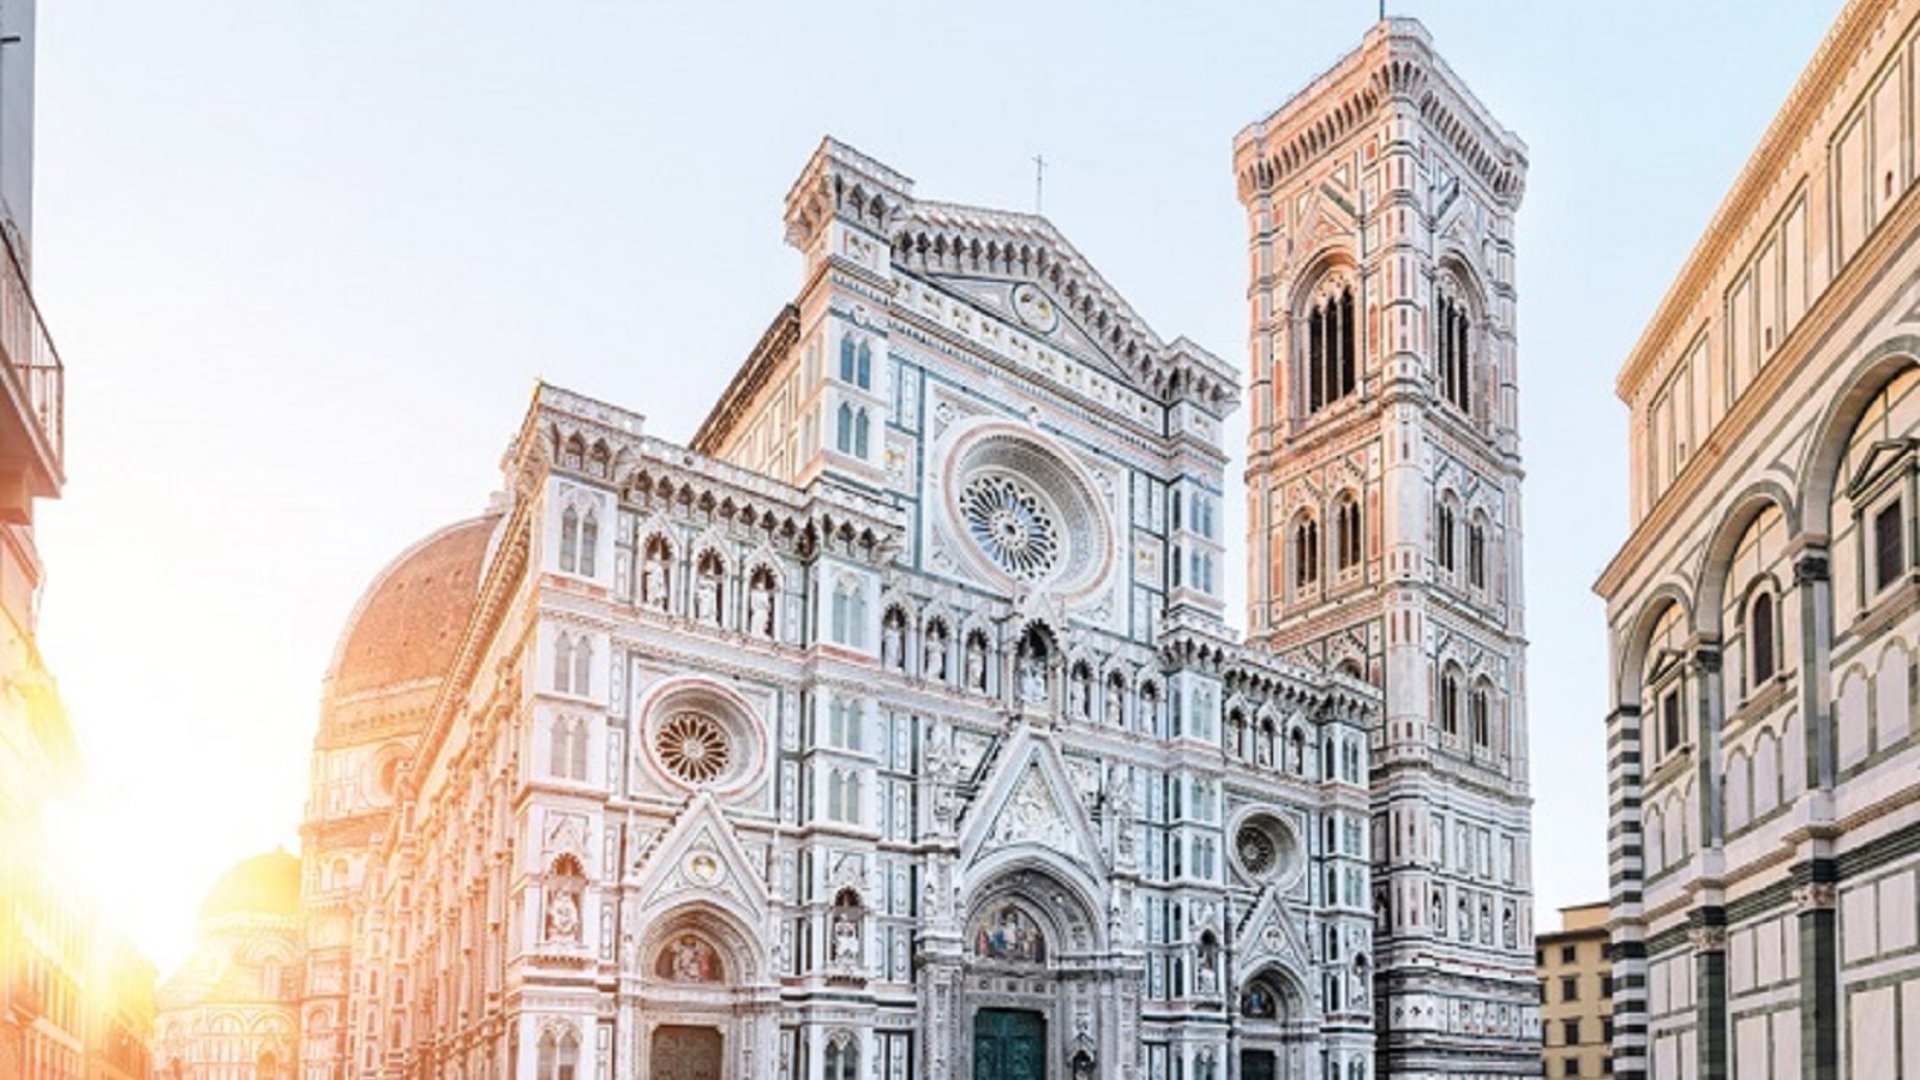 Un tour guiado en bicicleta de 2 horas para descubrir los lugares más emblemáticos del centro de Florencia